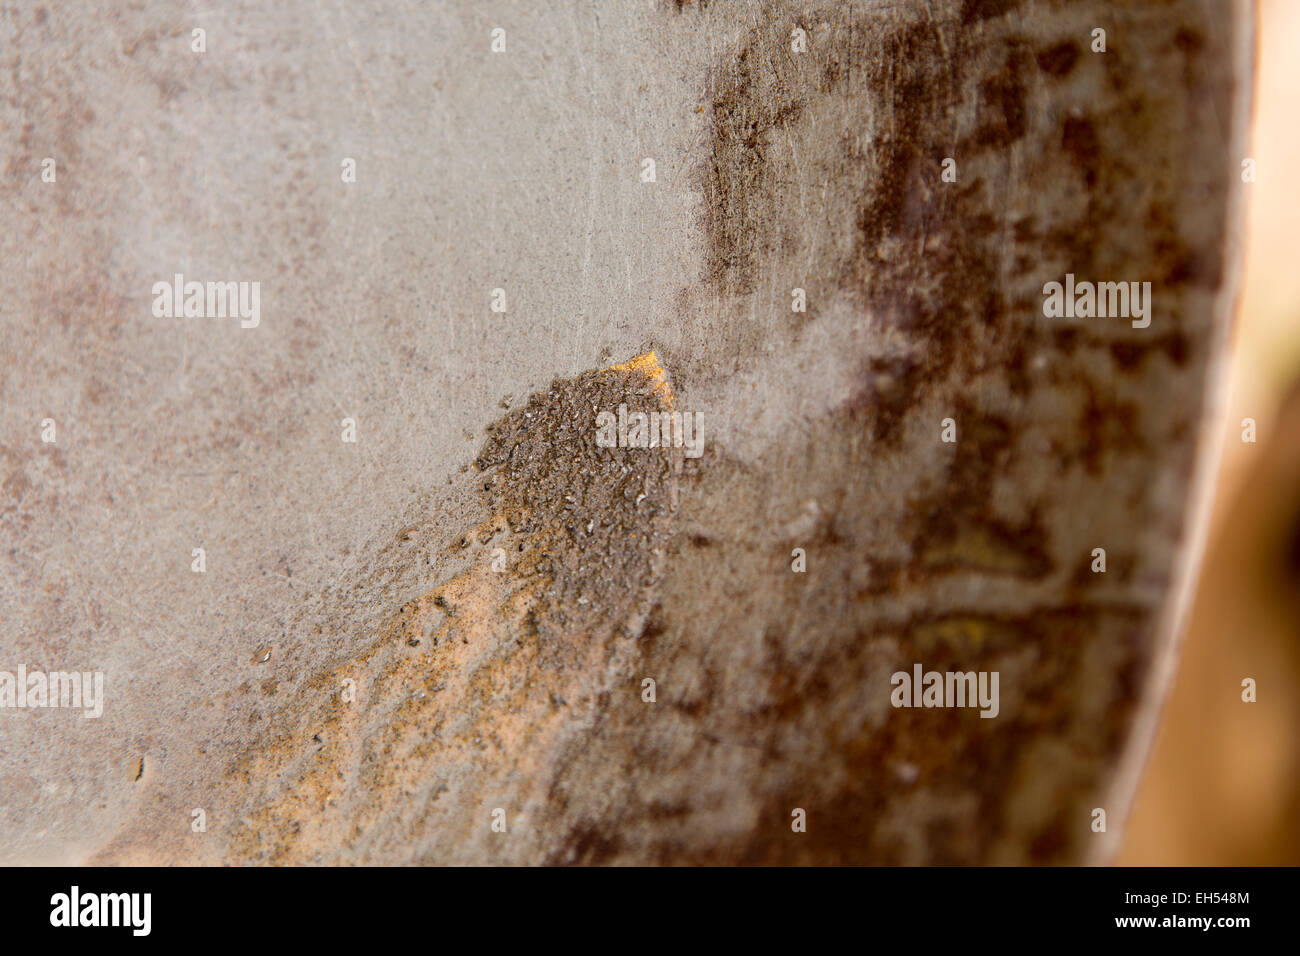 KOMOBANGAU, NIGER, : minuscole particelle di oro mostrano fino al residuo dopo il lavaggio a basso grado di minerale. Foto Stock